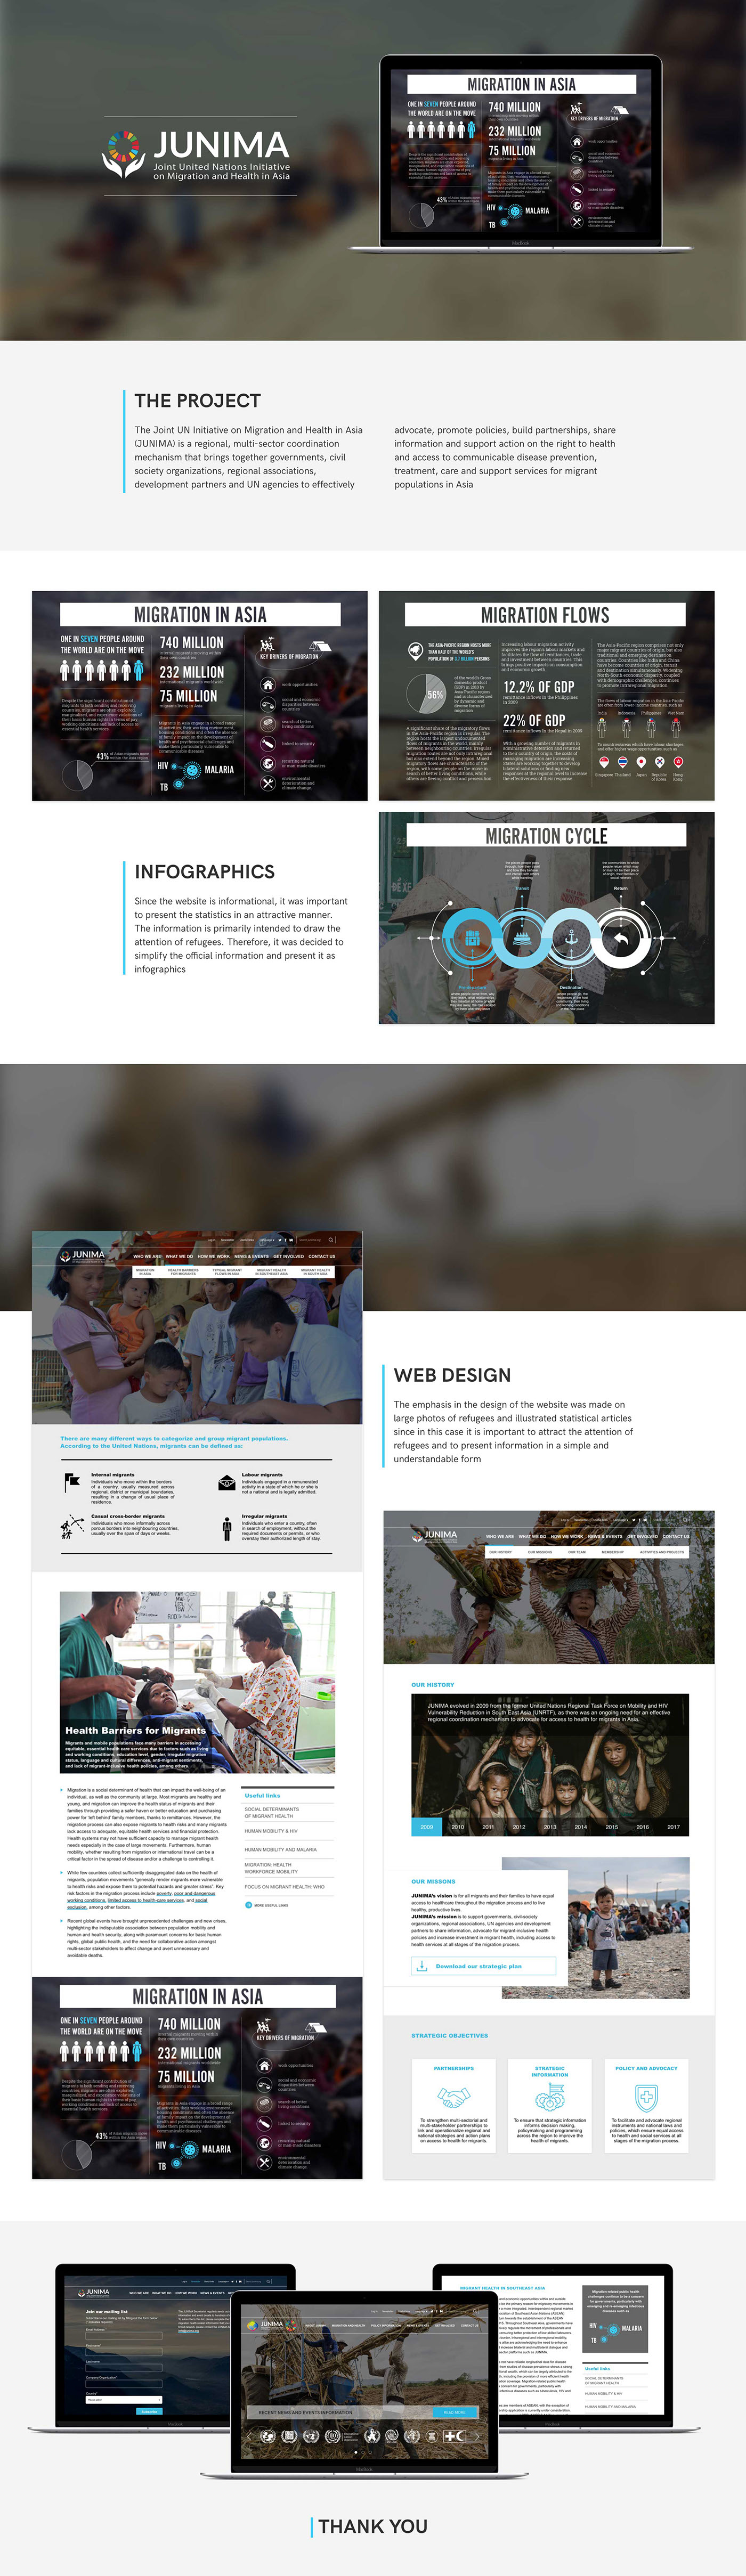 Website asia infographic design ux UI Webdesign